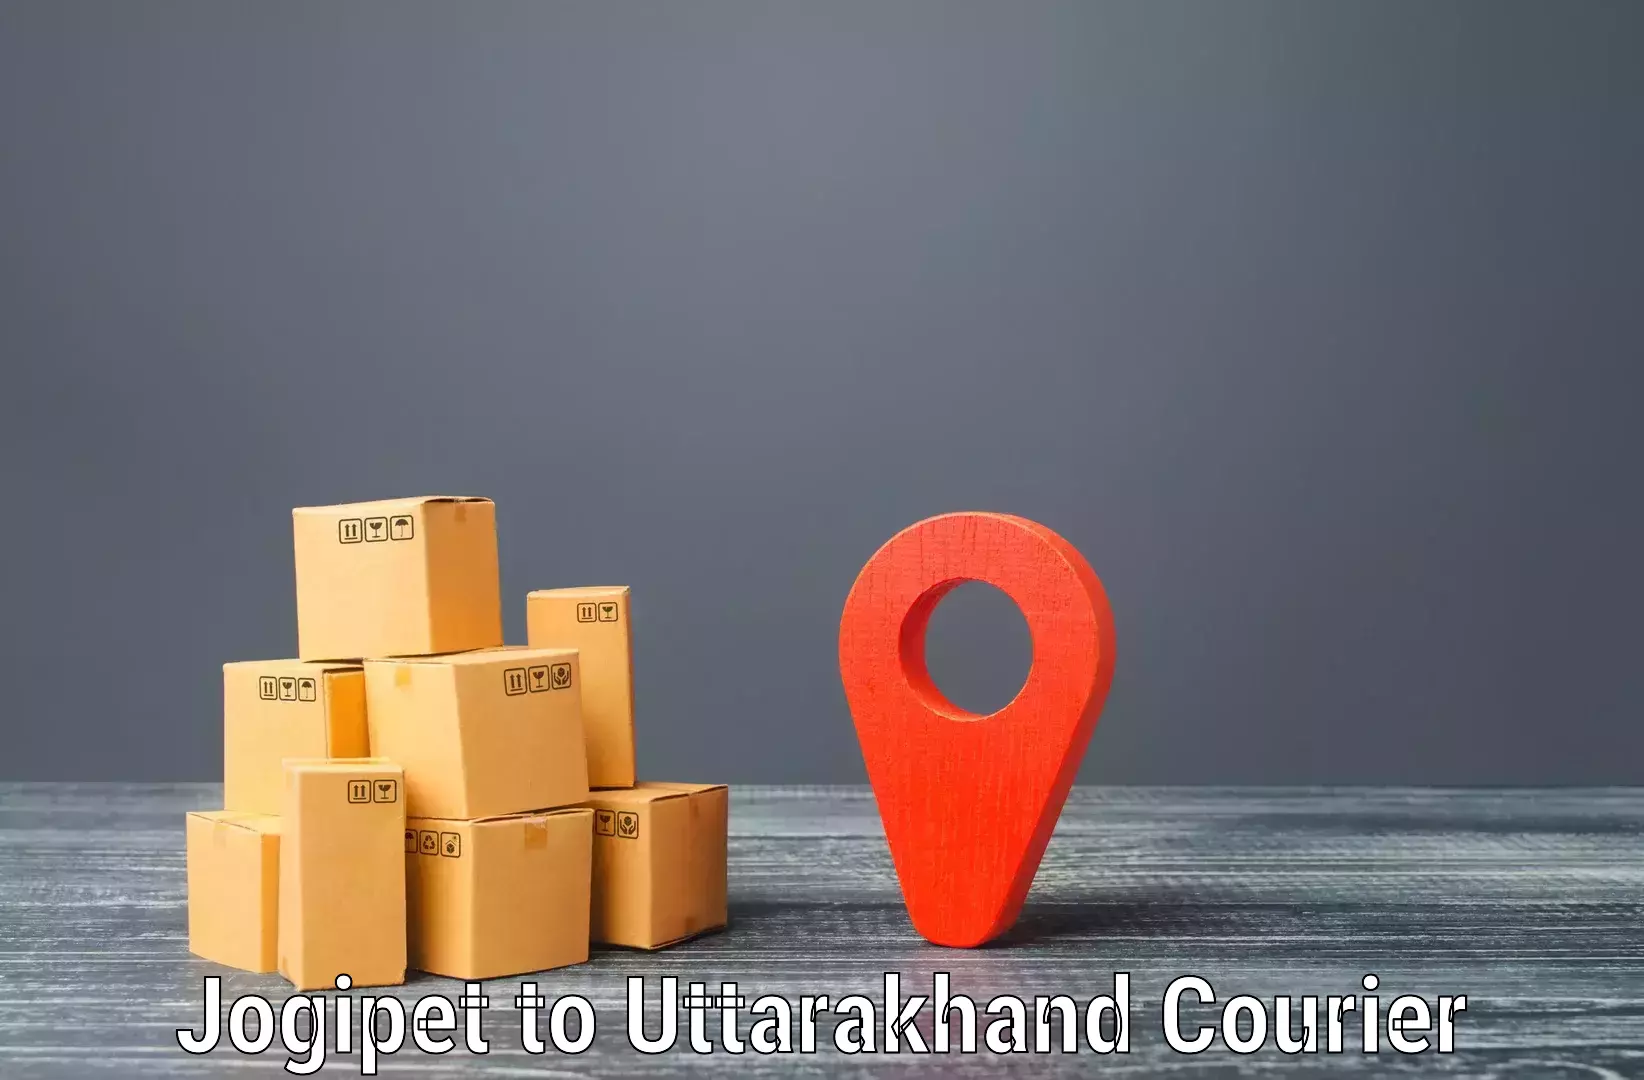 Specialized shipment handling Jogipet to Uttarakhand